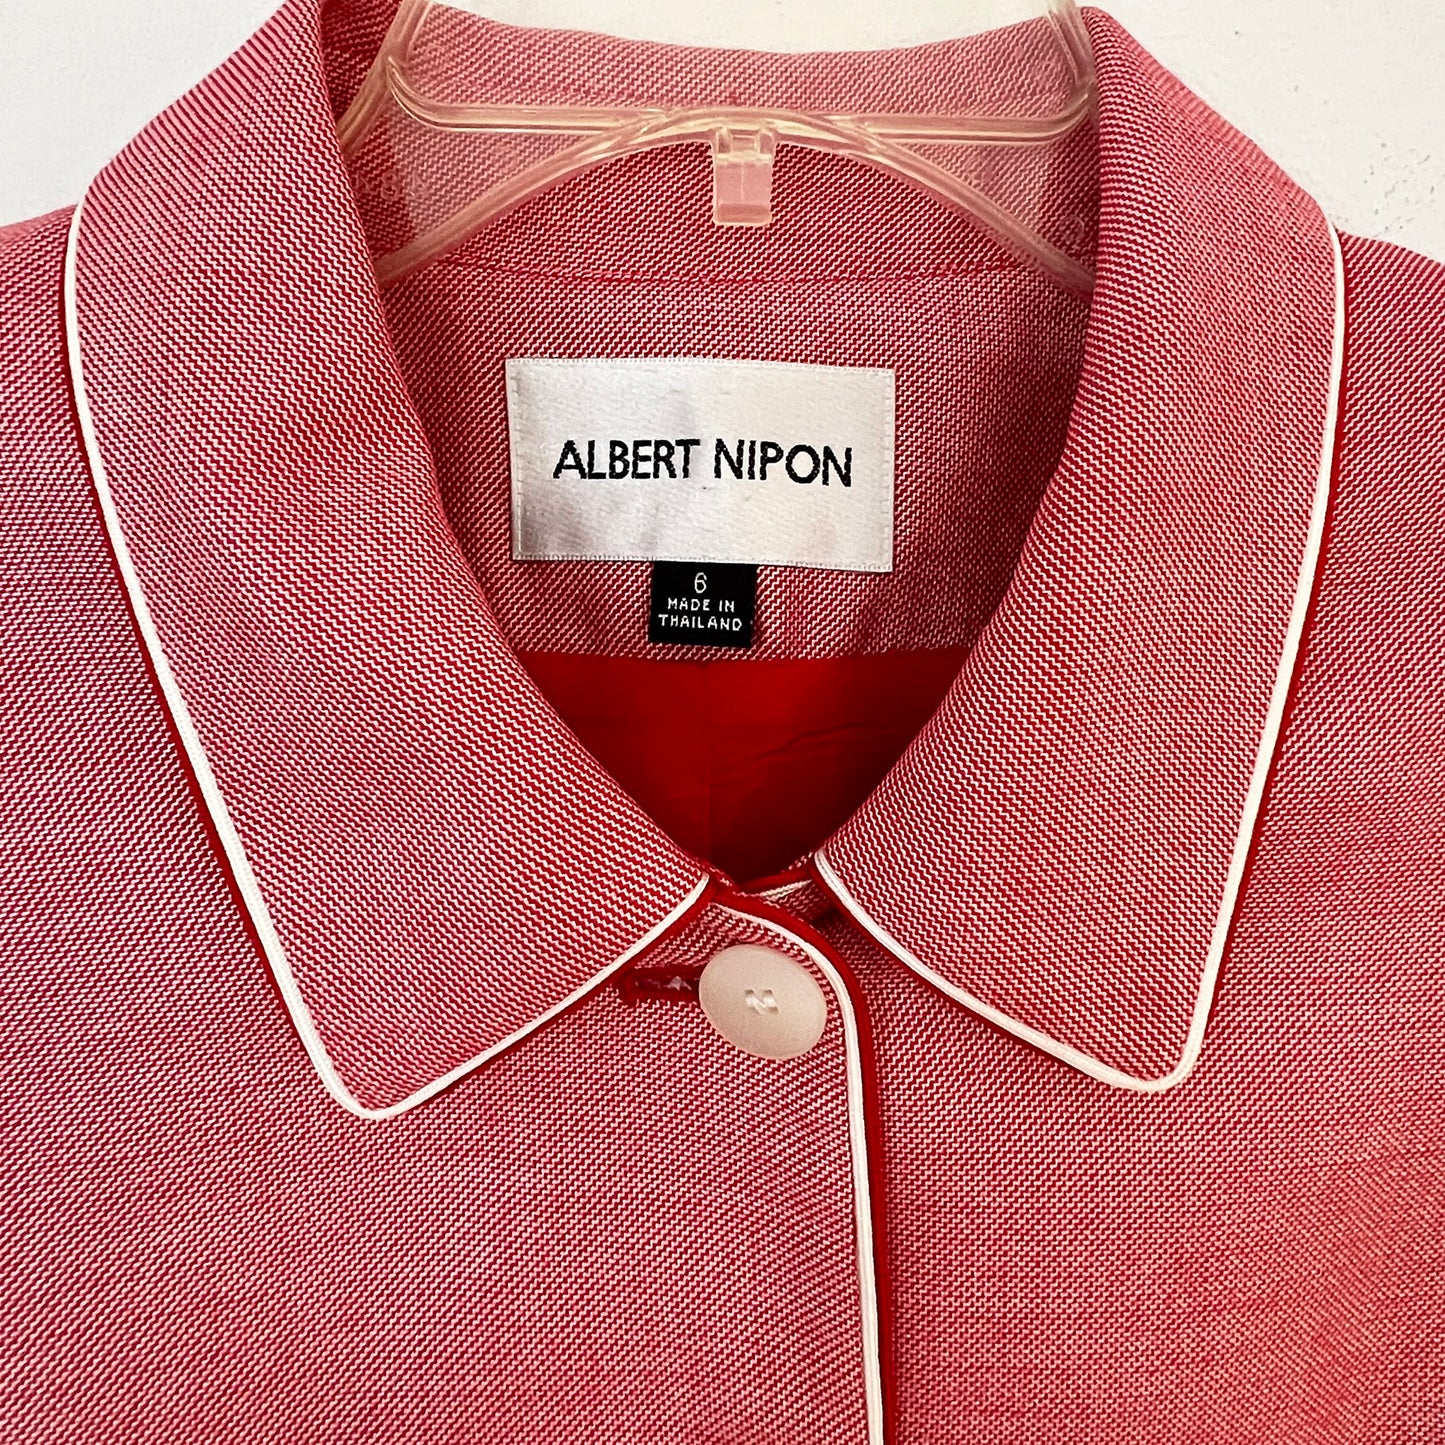 Albert-Nipon-Skirt-Suit-Jacket-Close-up-view.